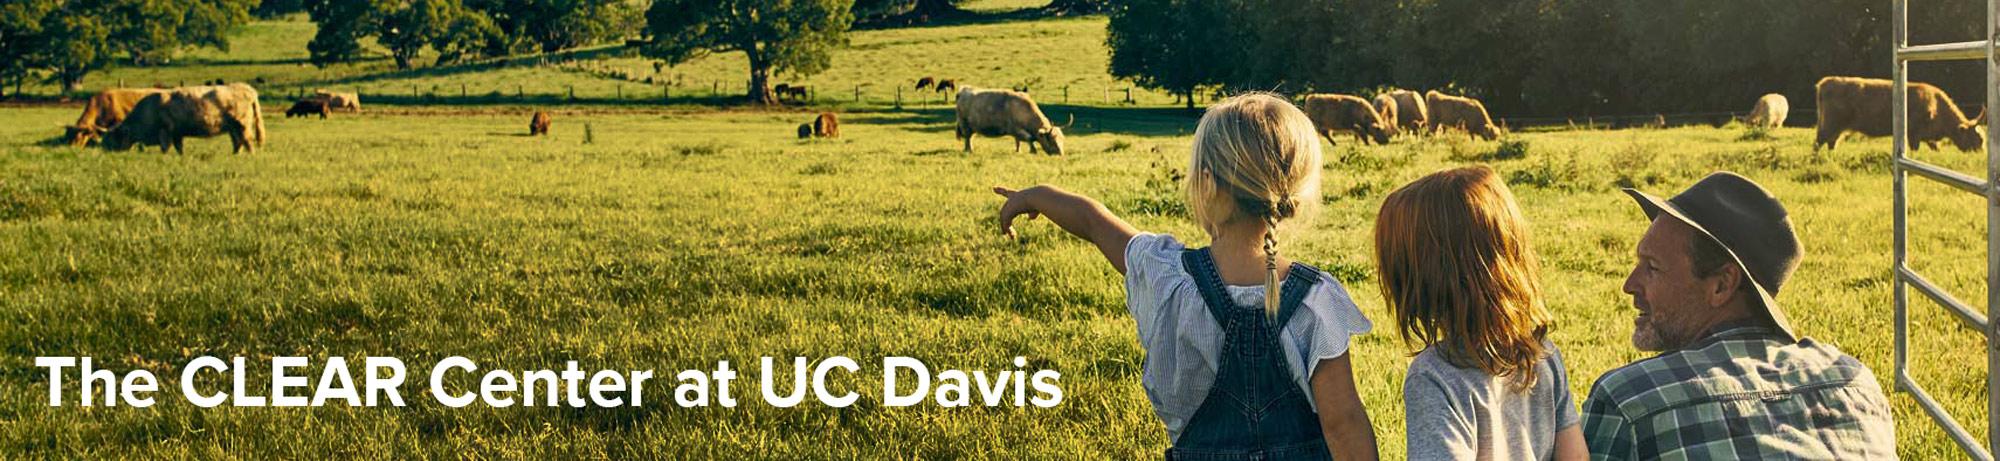 UC Davis CLEAR Center